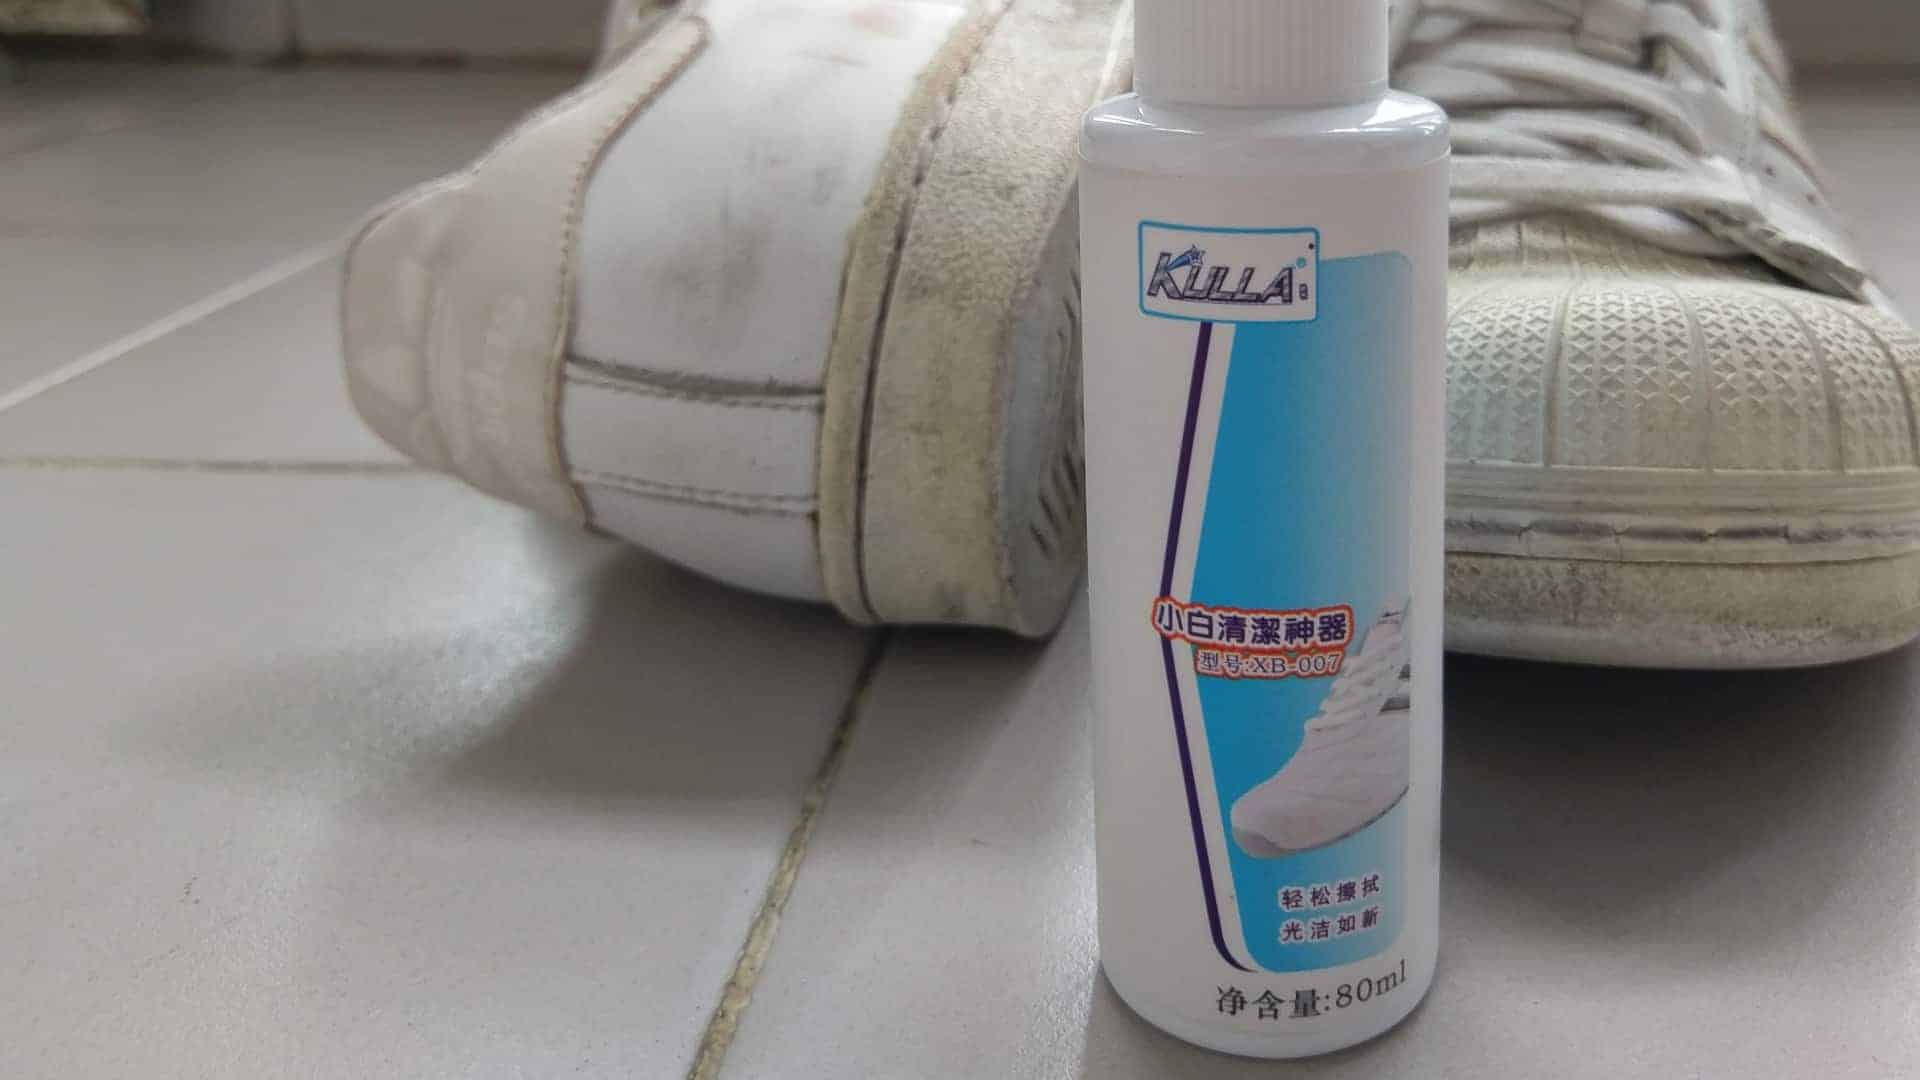 IMAG0210 - 清潔波鞋必備：小白清潔神器試用